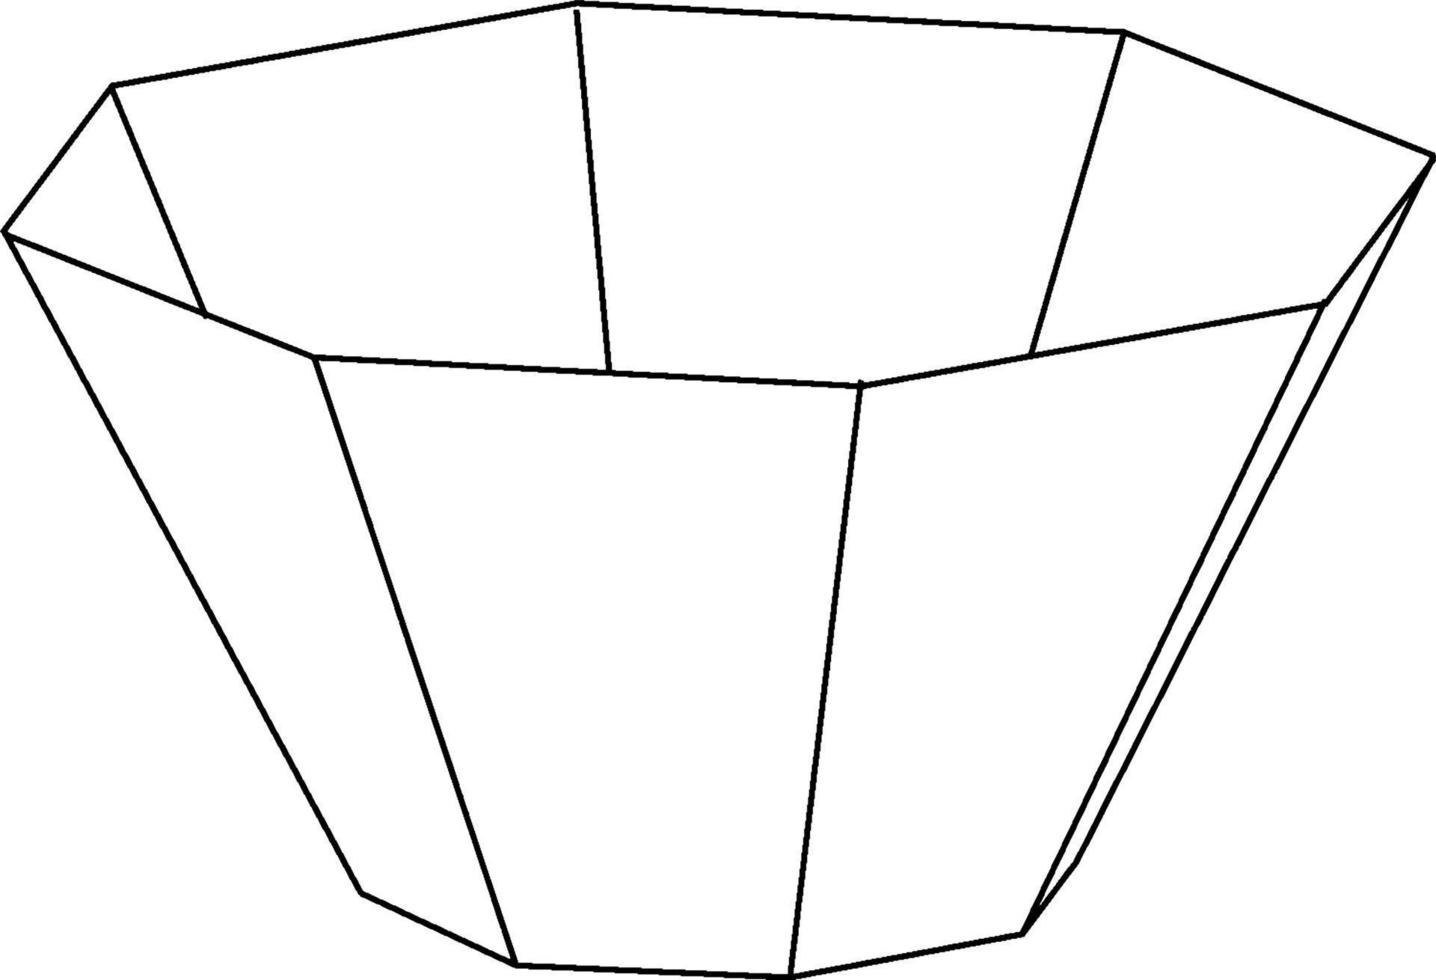 un tronc d'une pyramide octogonale, illustration vintage. vecteur